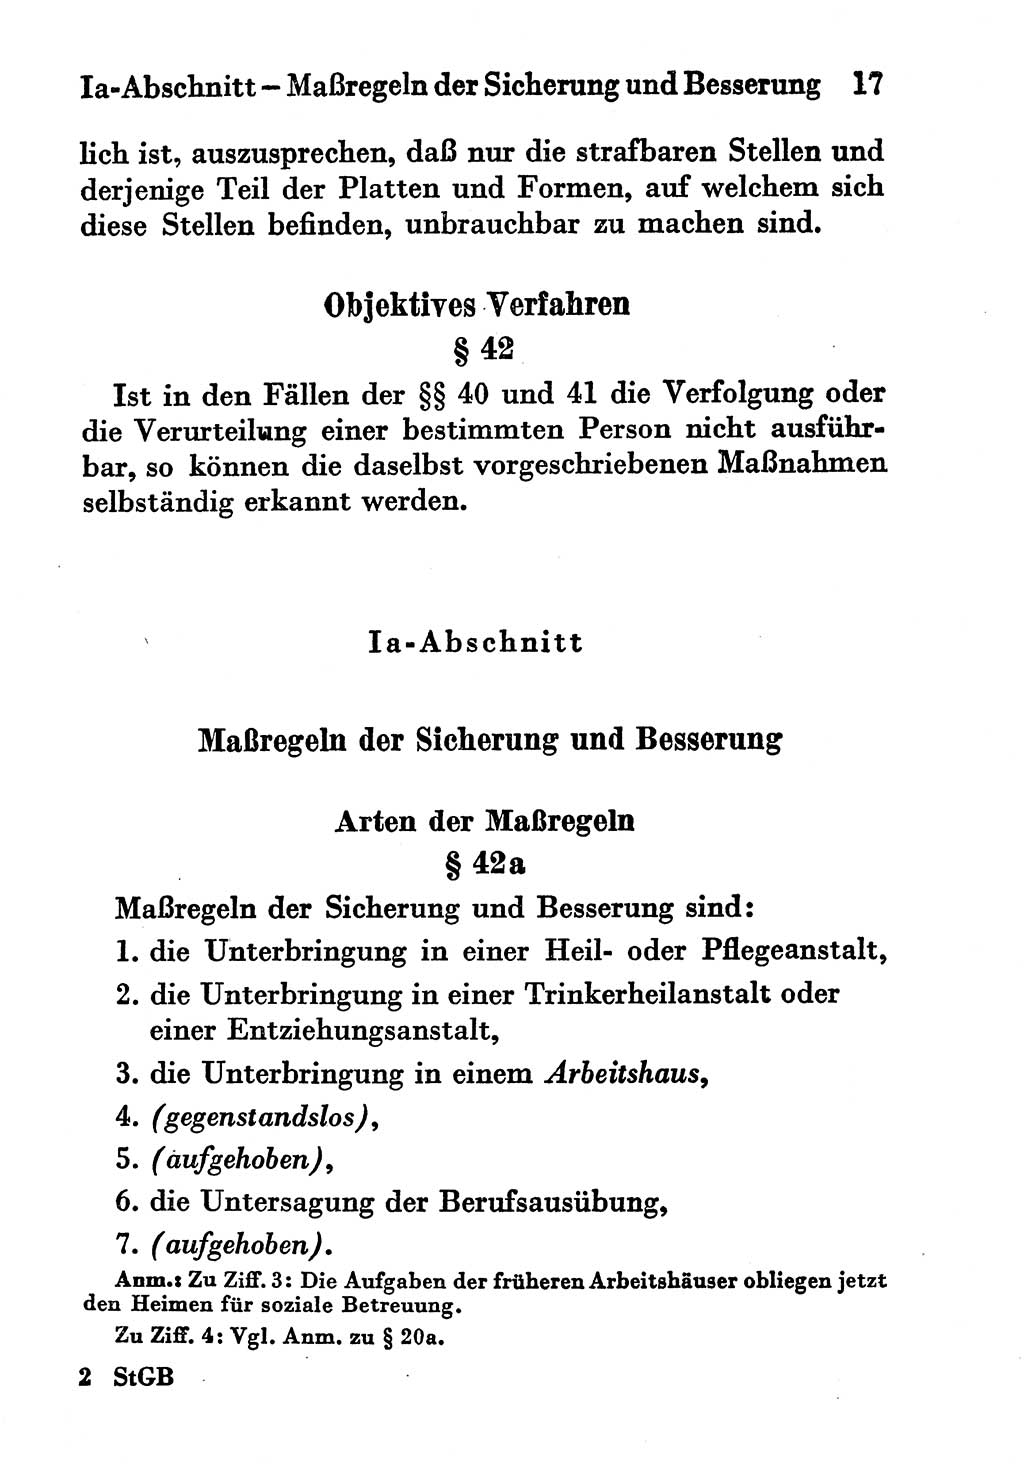 Strafgesetzbuch (StGB) und andere Strafgesetze [Deutsche Demokratische Republik (DDR)] 1956, Seite 17 (StGB Strafges. DDR 1956, S. 17)